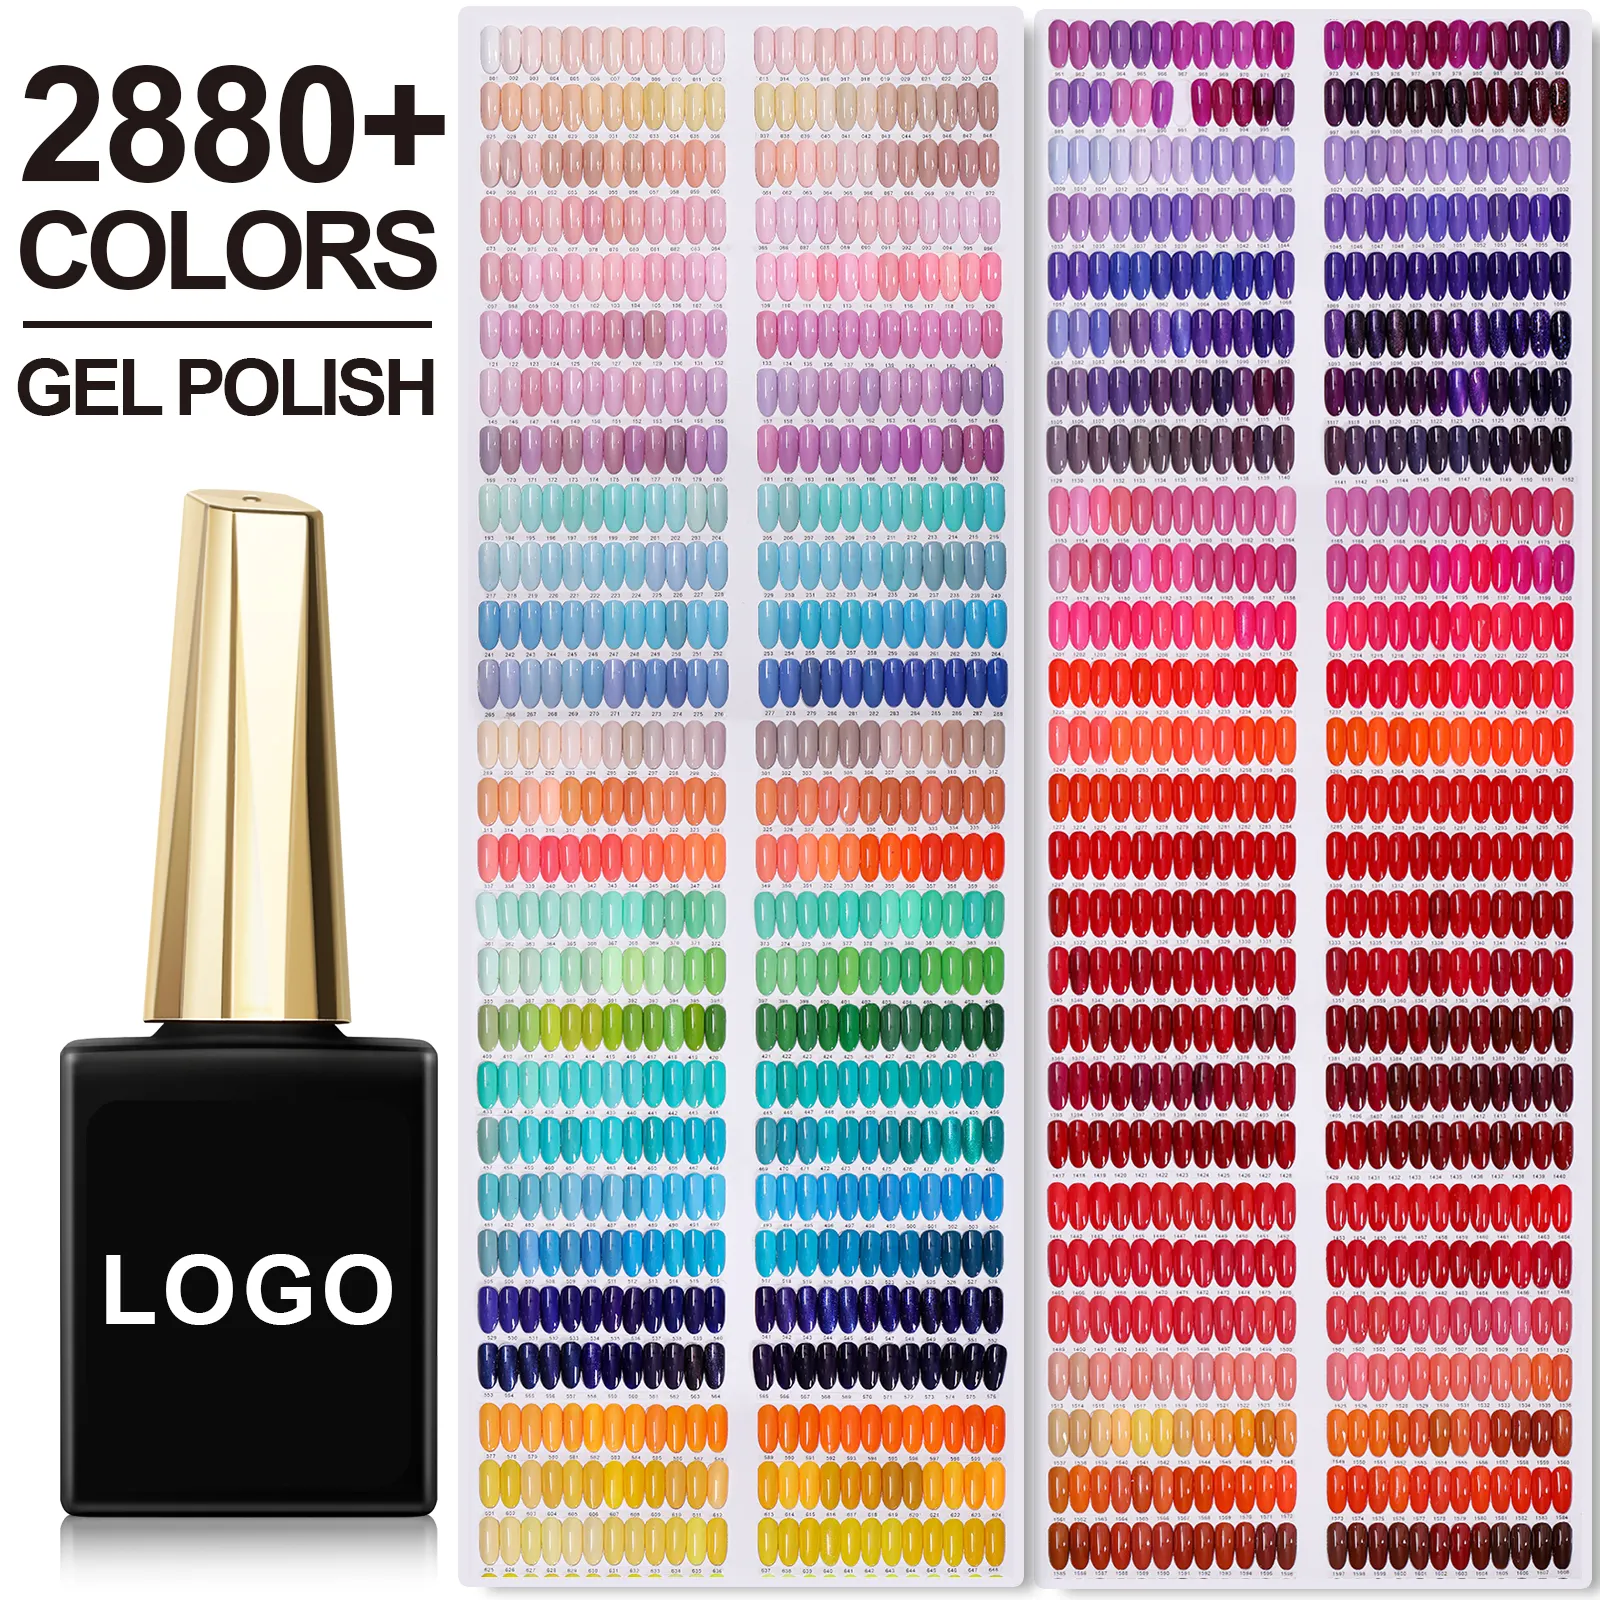 UV Gel Nagellack Custom ized Logo 2880 Farben Hot Sale Gel politur OEM/ODM Gel politur Custom Logo Private Label Machen Sie Ihre Marke